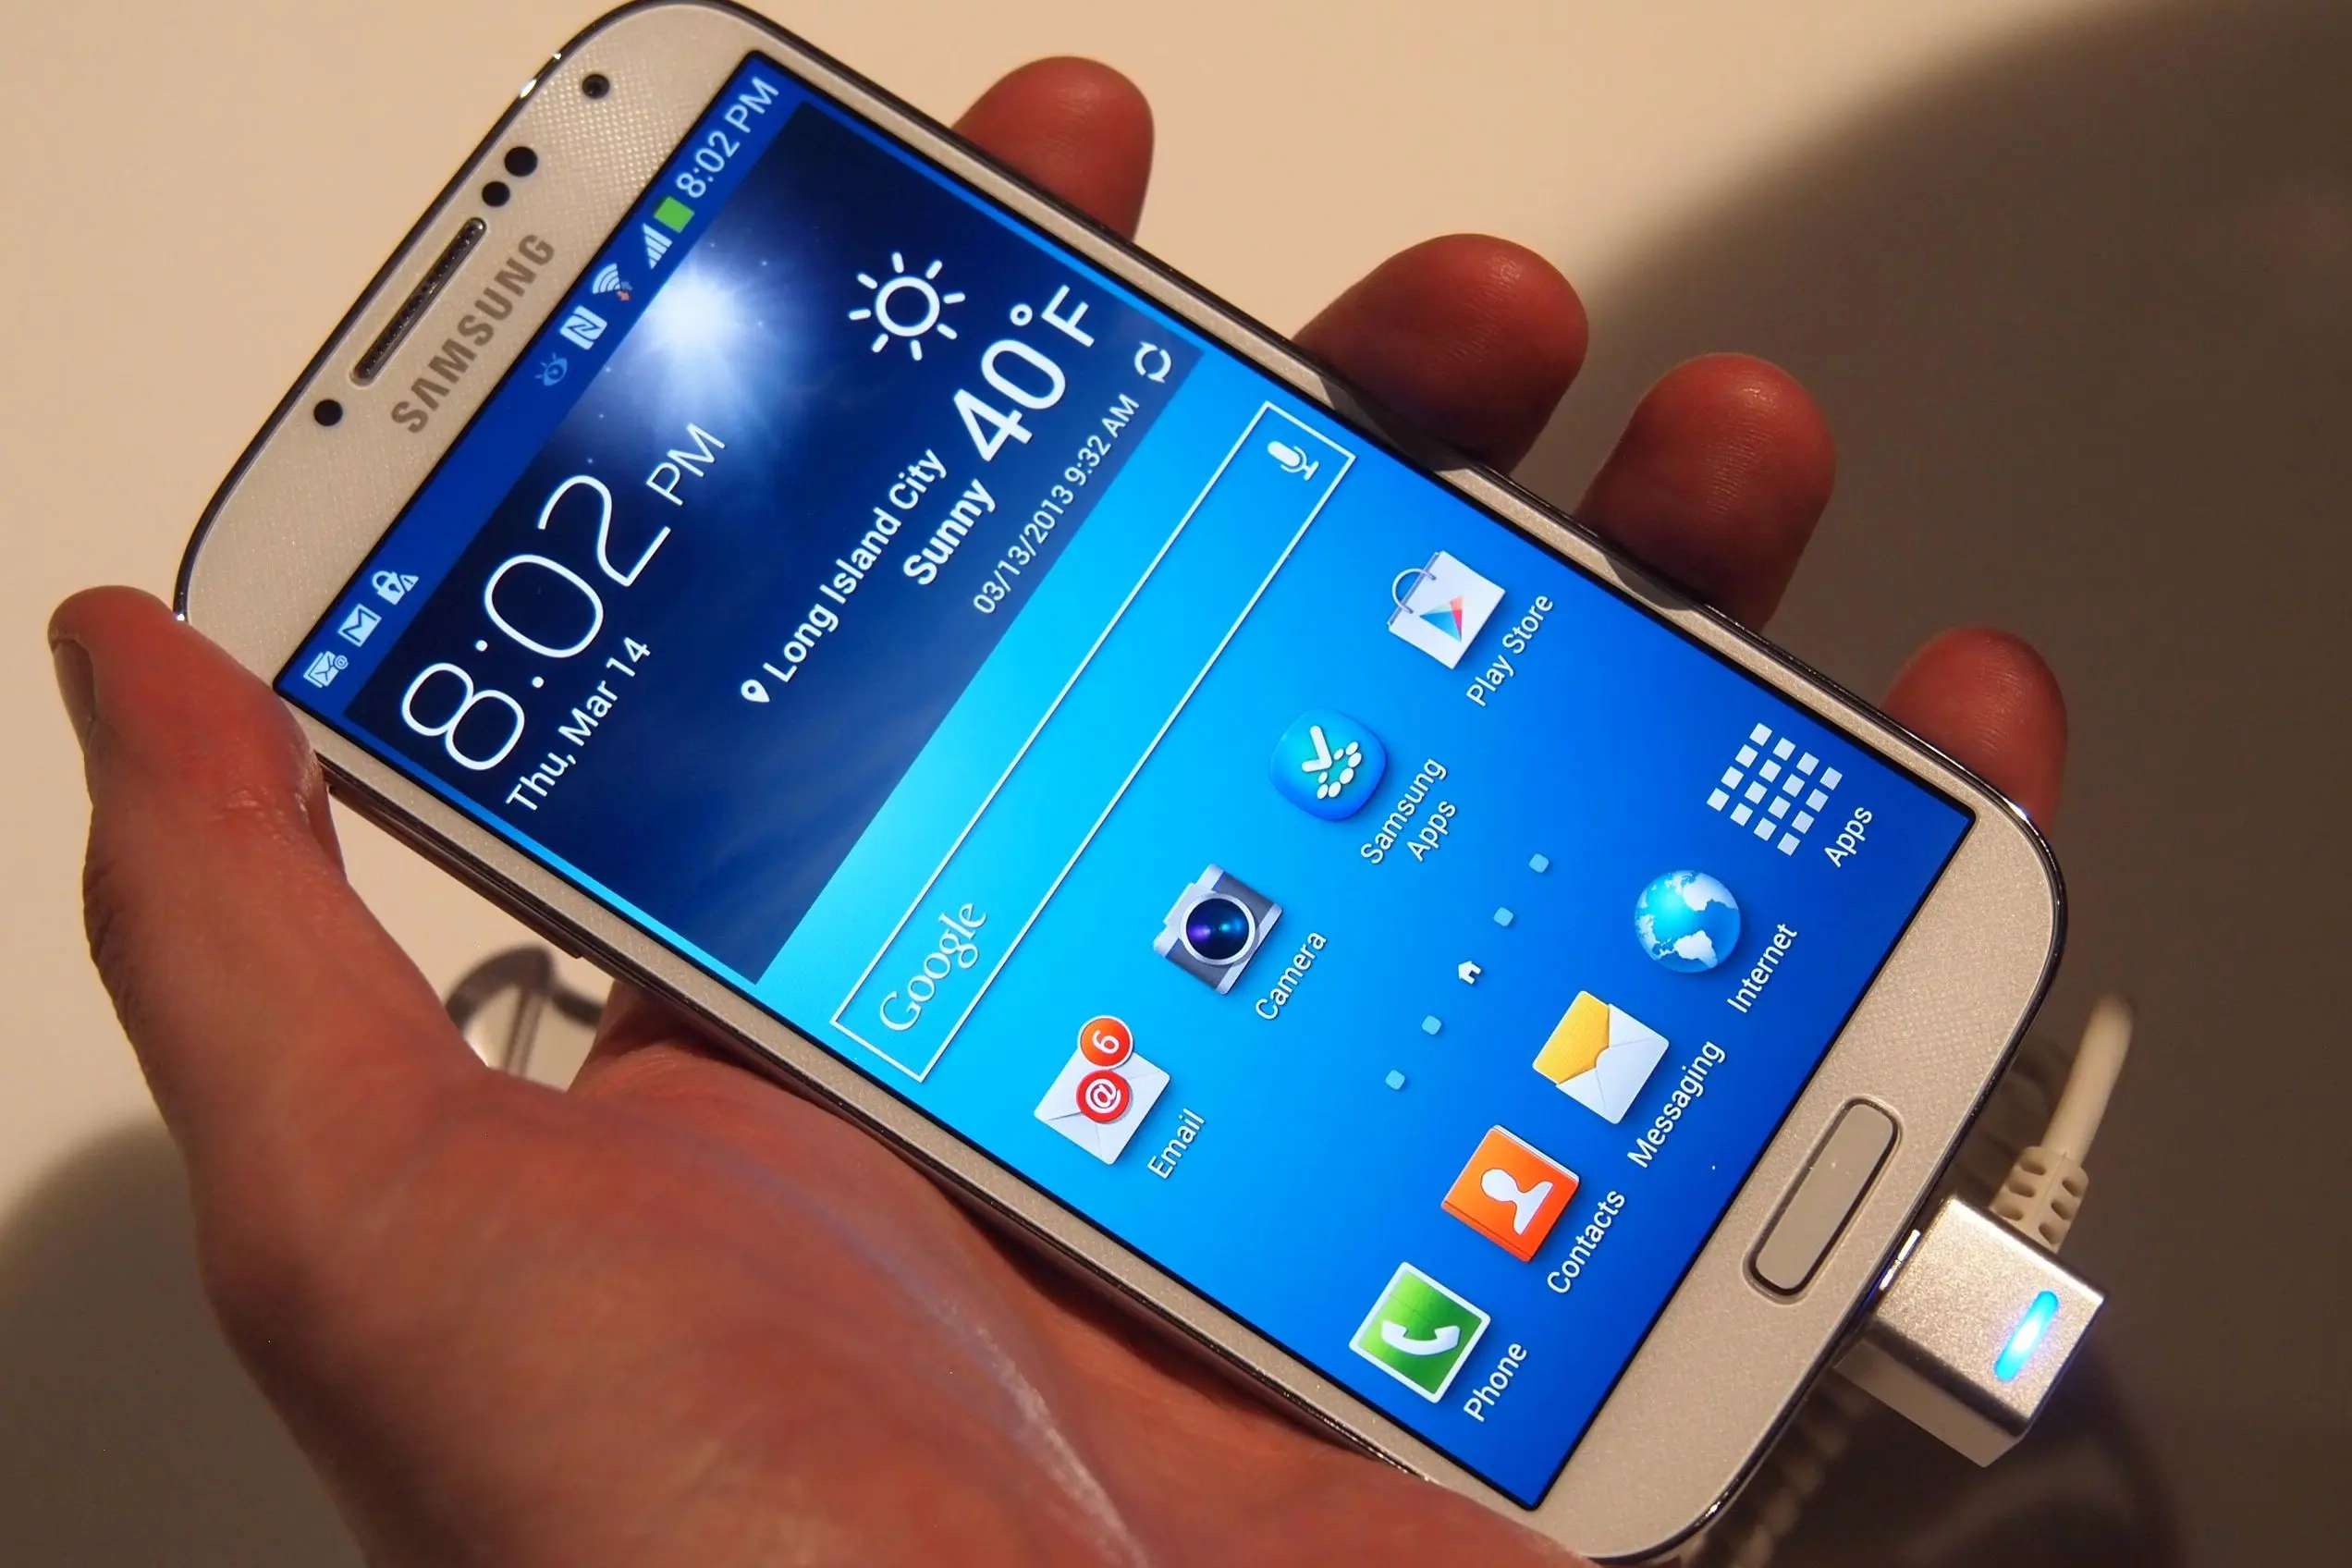 Le Samsung Galaxy S4 : les nouveautés